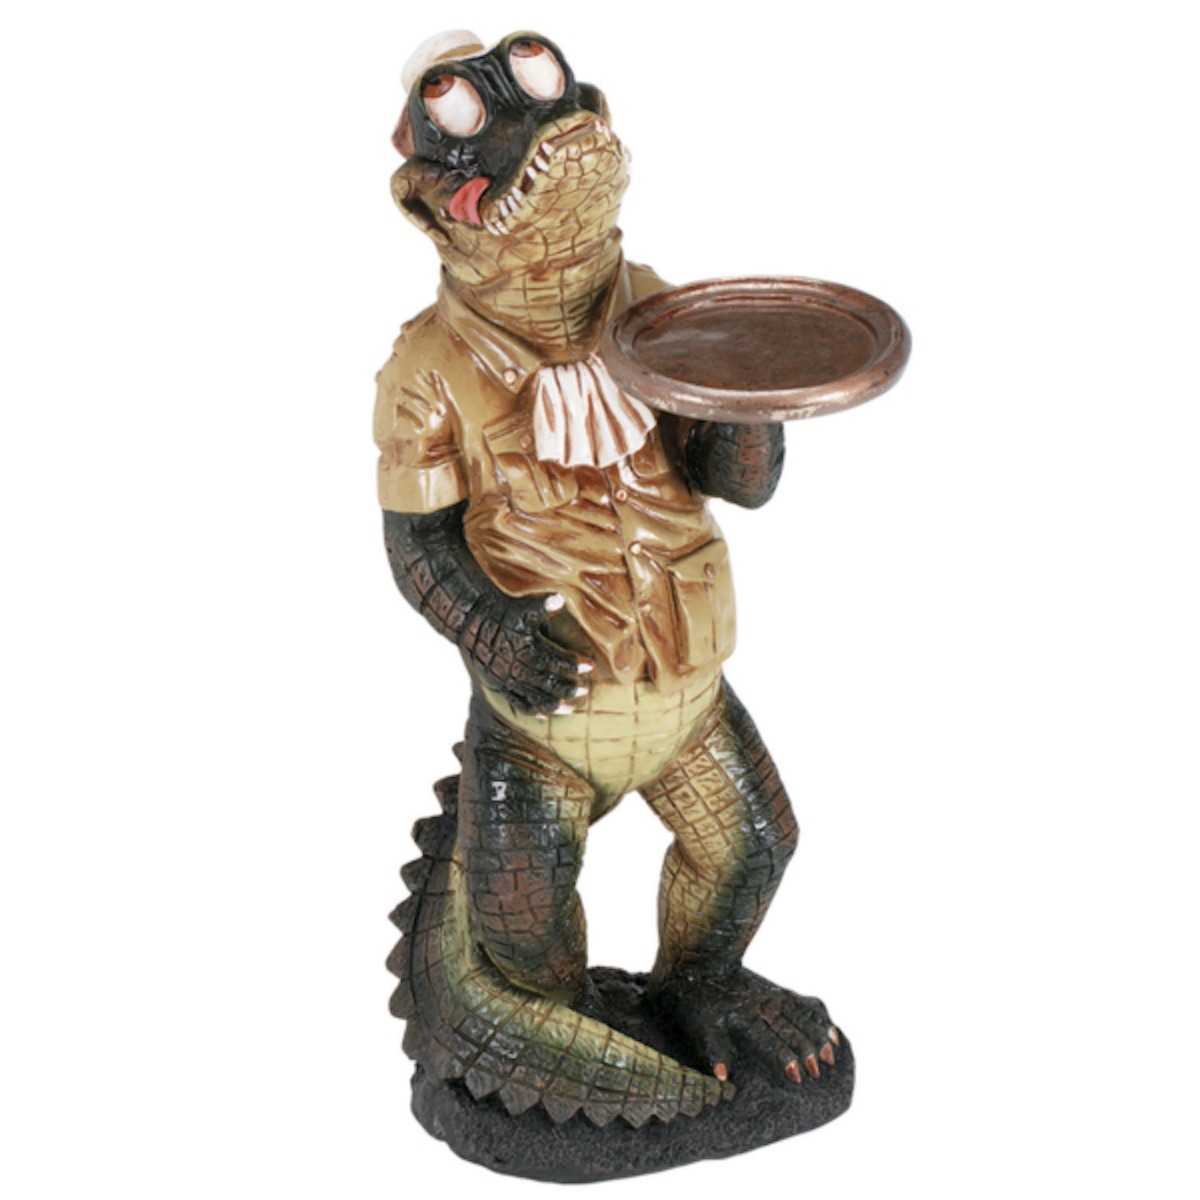 Alligator-Waiter-Statue-1-1.jpg